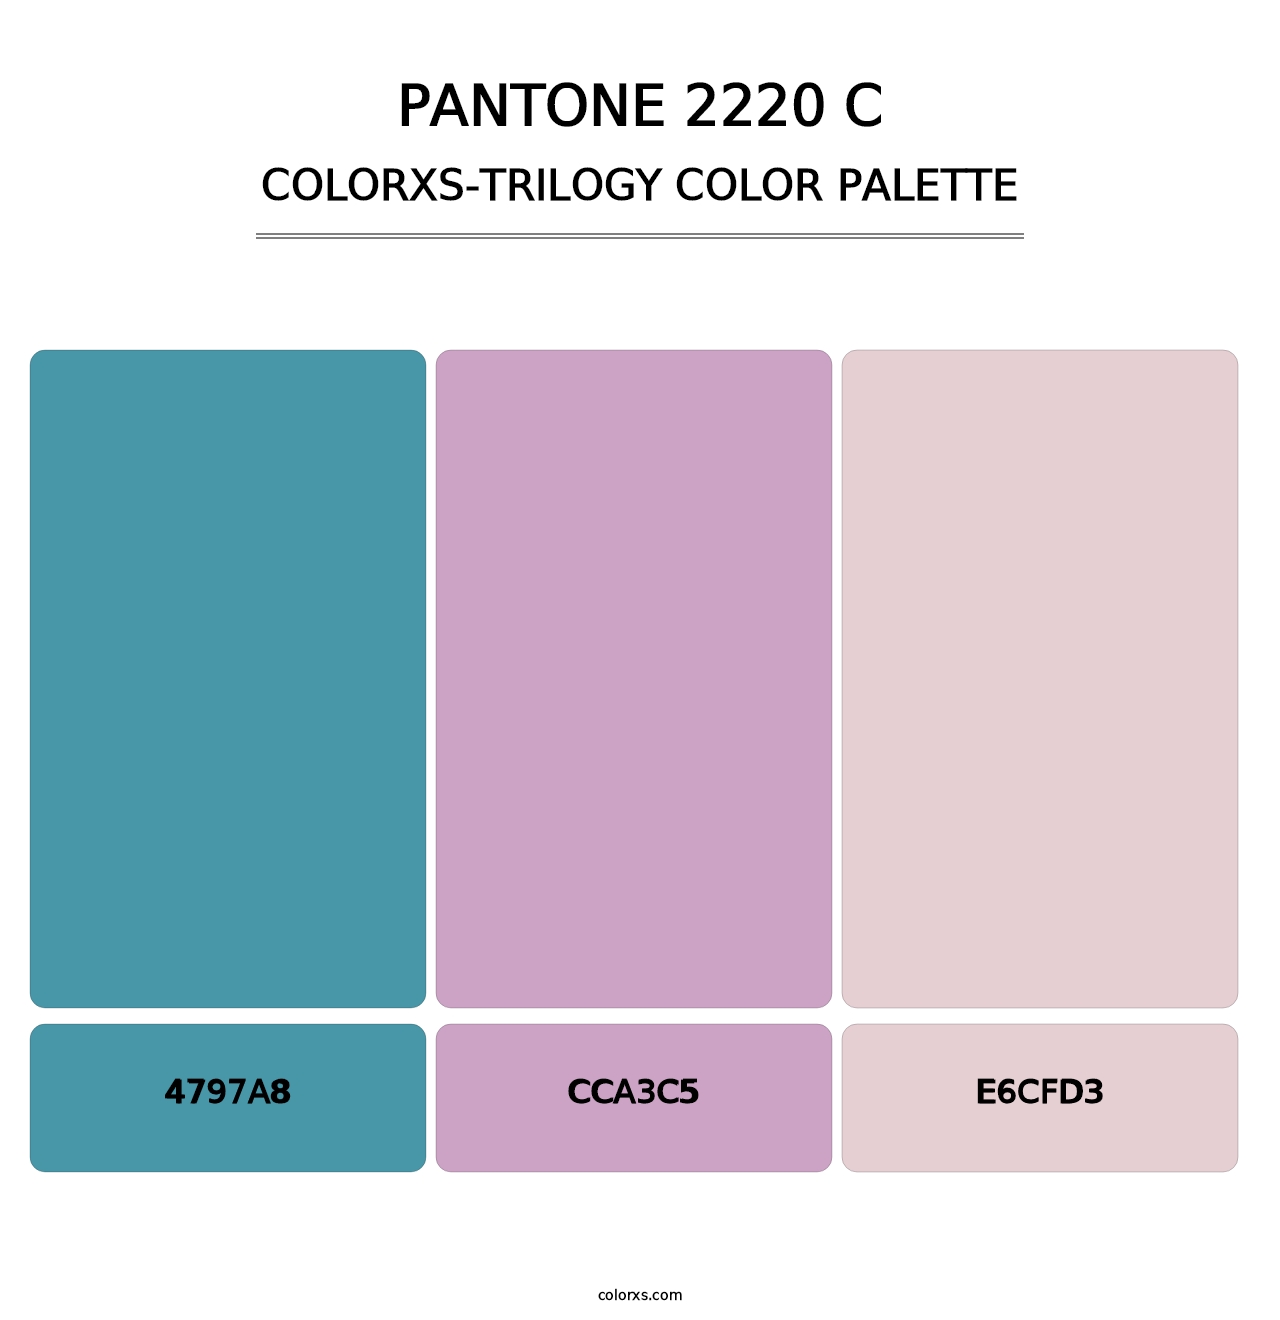 PANTONE 2220 C - Colorxs Trilogy Palette